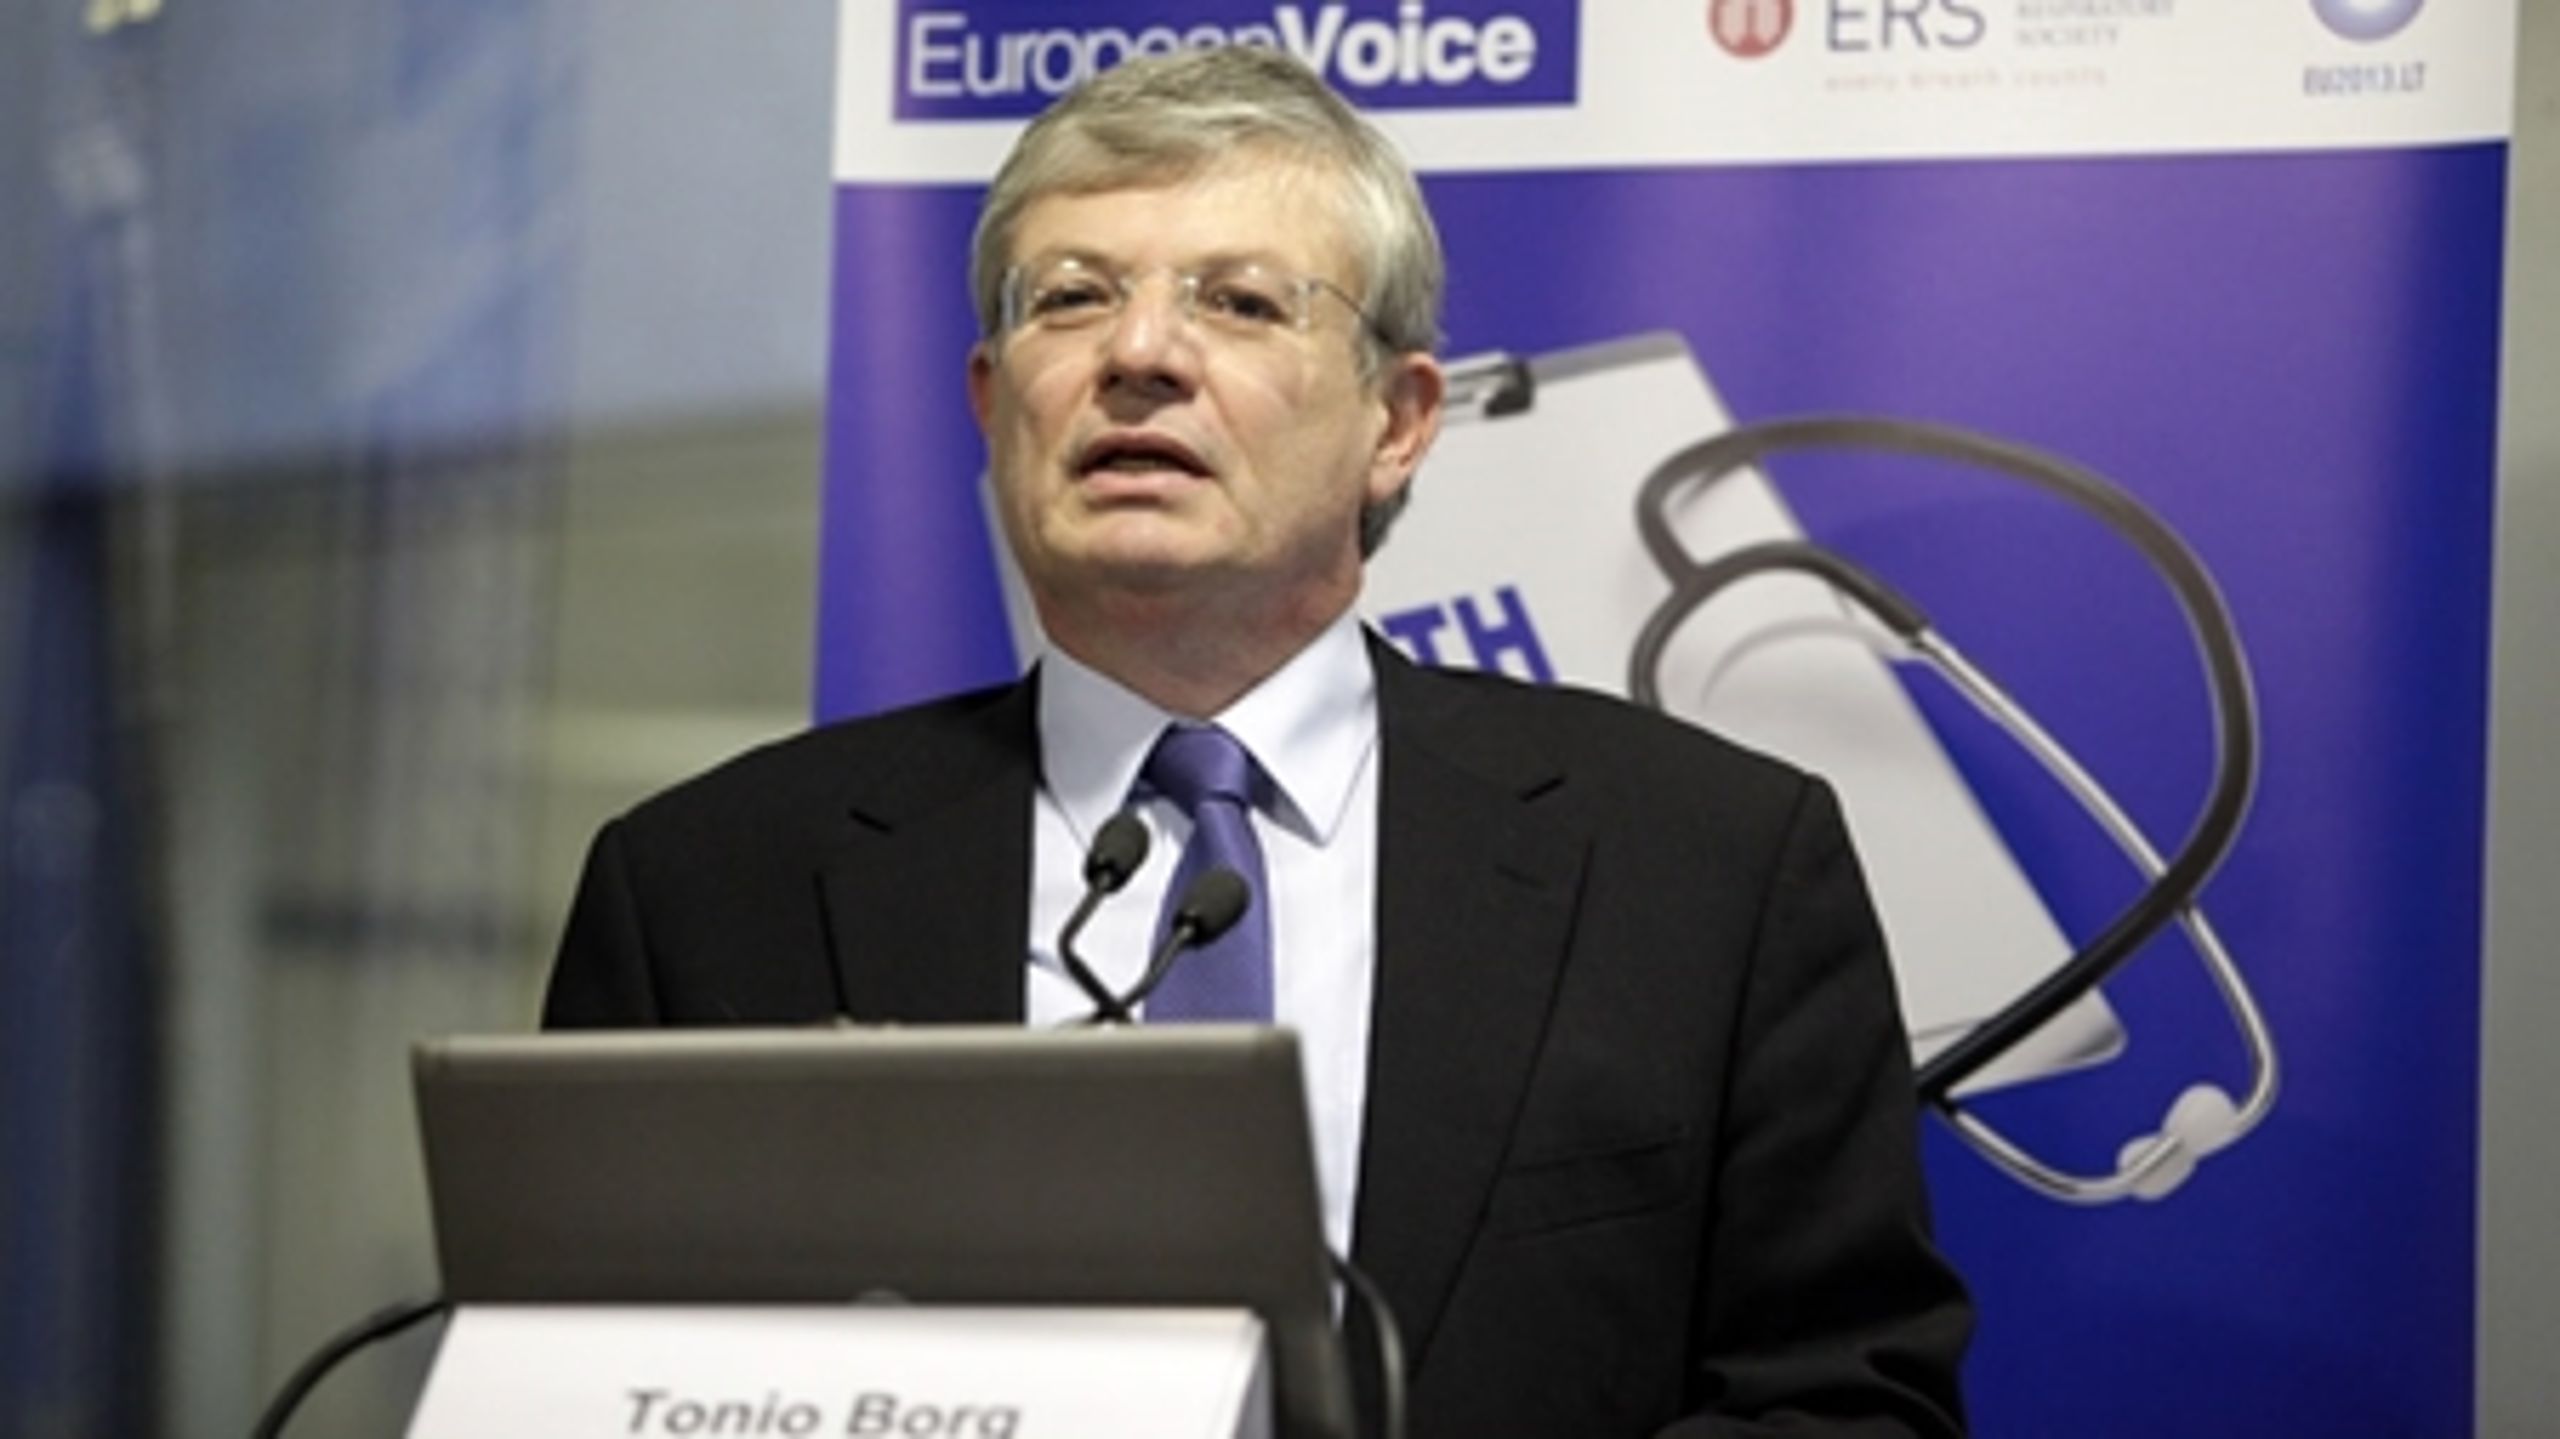 EU's sundhedskommissær Tonio Borg ønsker ikke, at EU-medlemslandene forhandler på egen hånd med Rusland om at genoptage svineimporten .